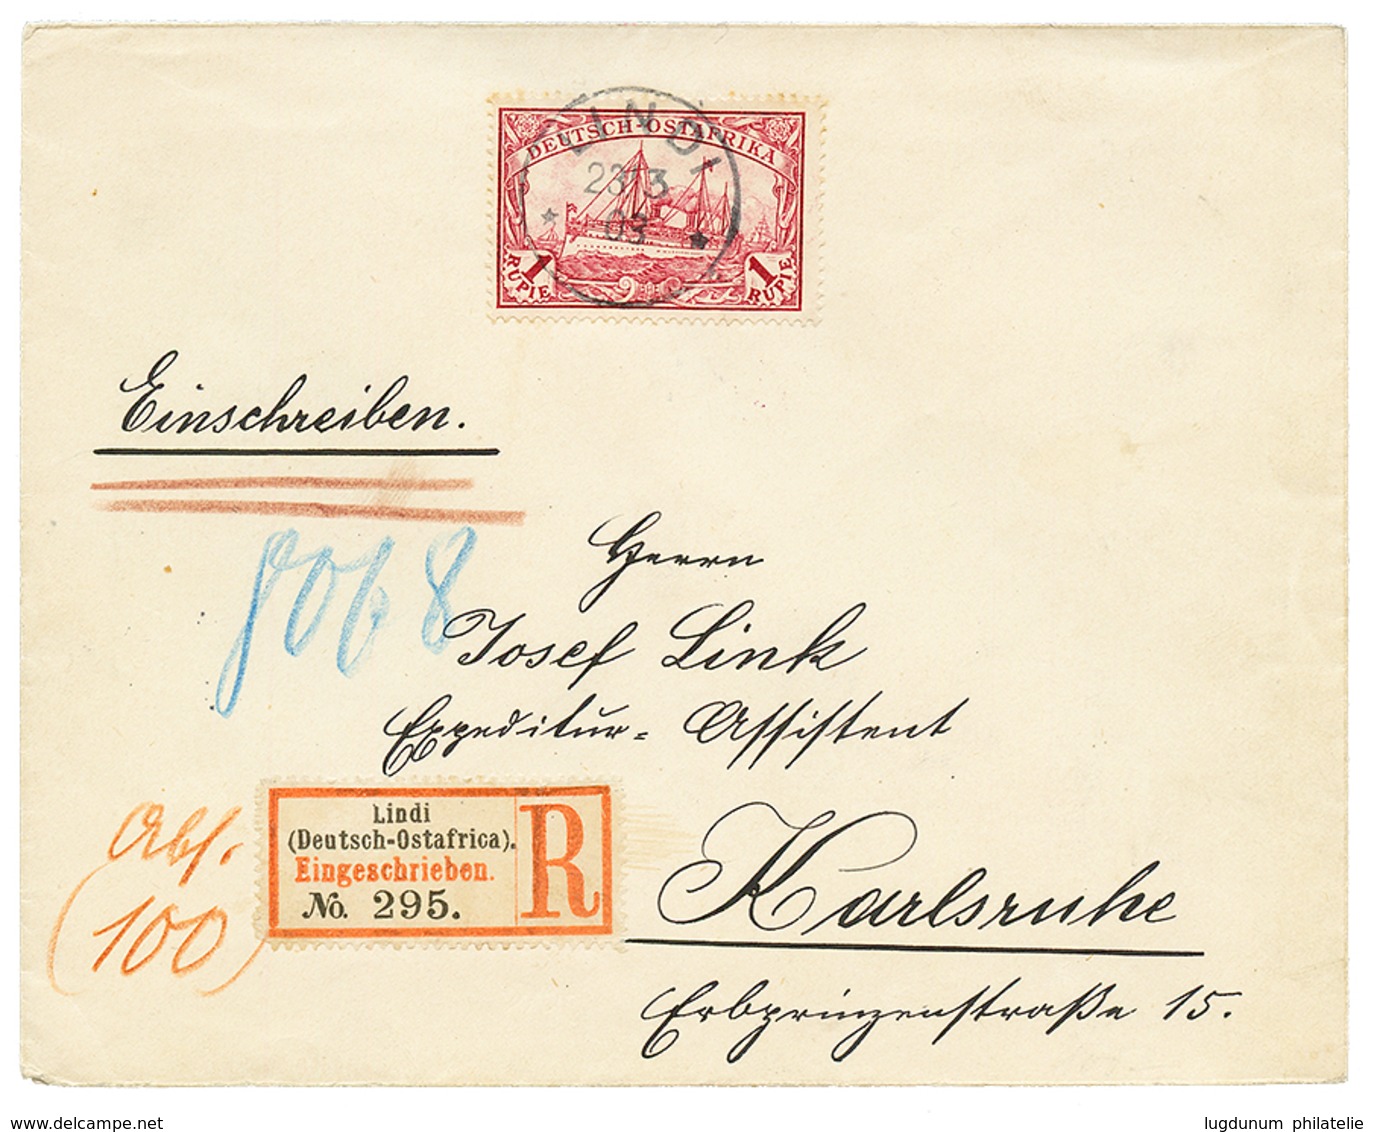 "LINDI" : 1903 1 MARK Canc. LINDI On REGISTERED Envelope To GERMANY. Superb. - Afrique Orientale